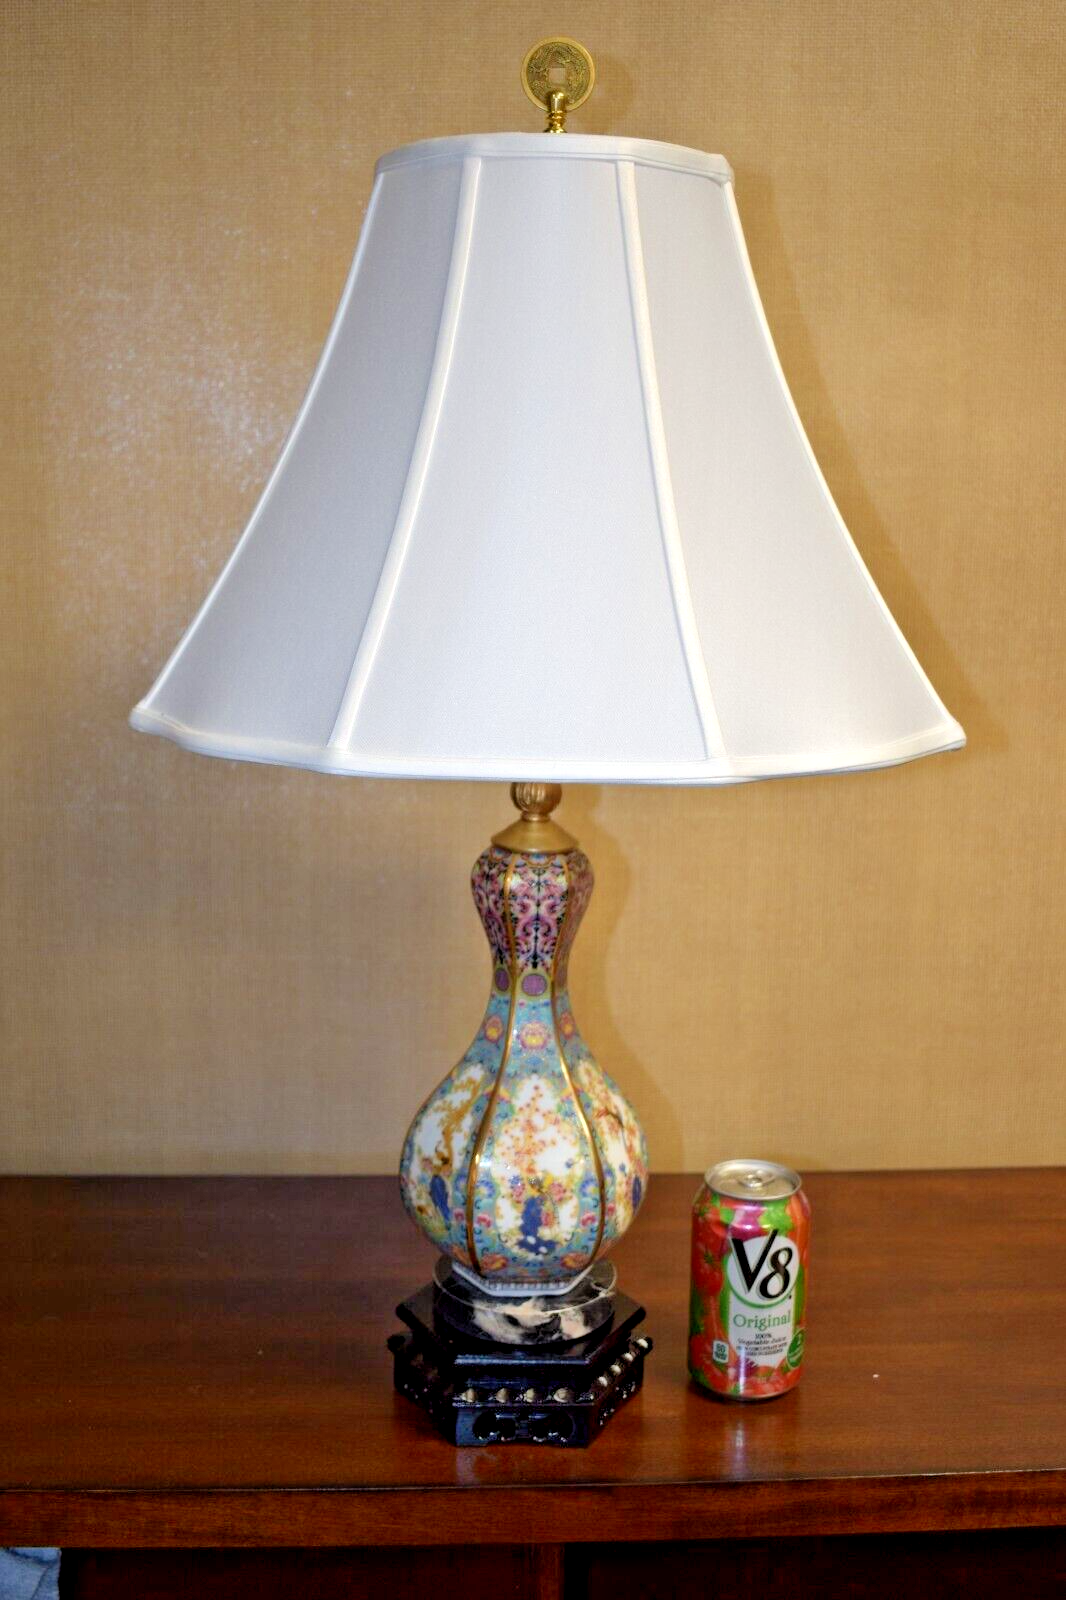 PAIR OF 26" PORCELAIN HEX ANTIQUE REPRODUCTION VASE LAMP   JINGDEZHEN CLASSIC DECOR LAMPS - фотография #4